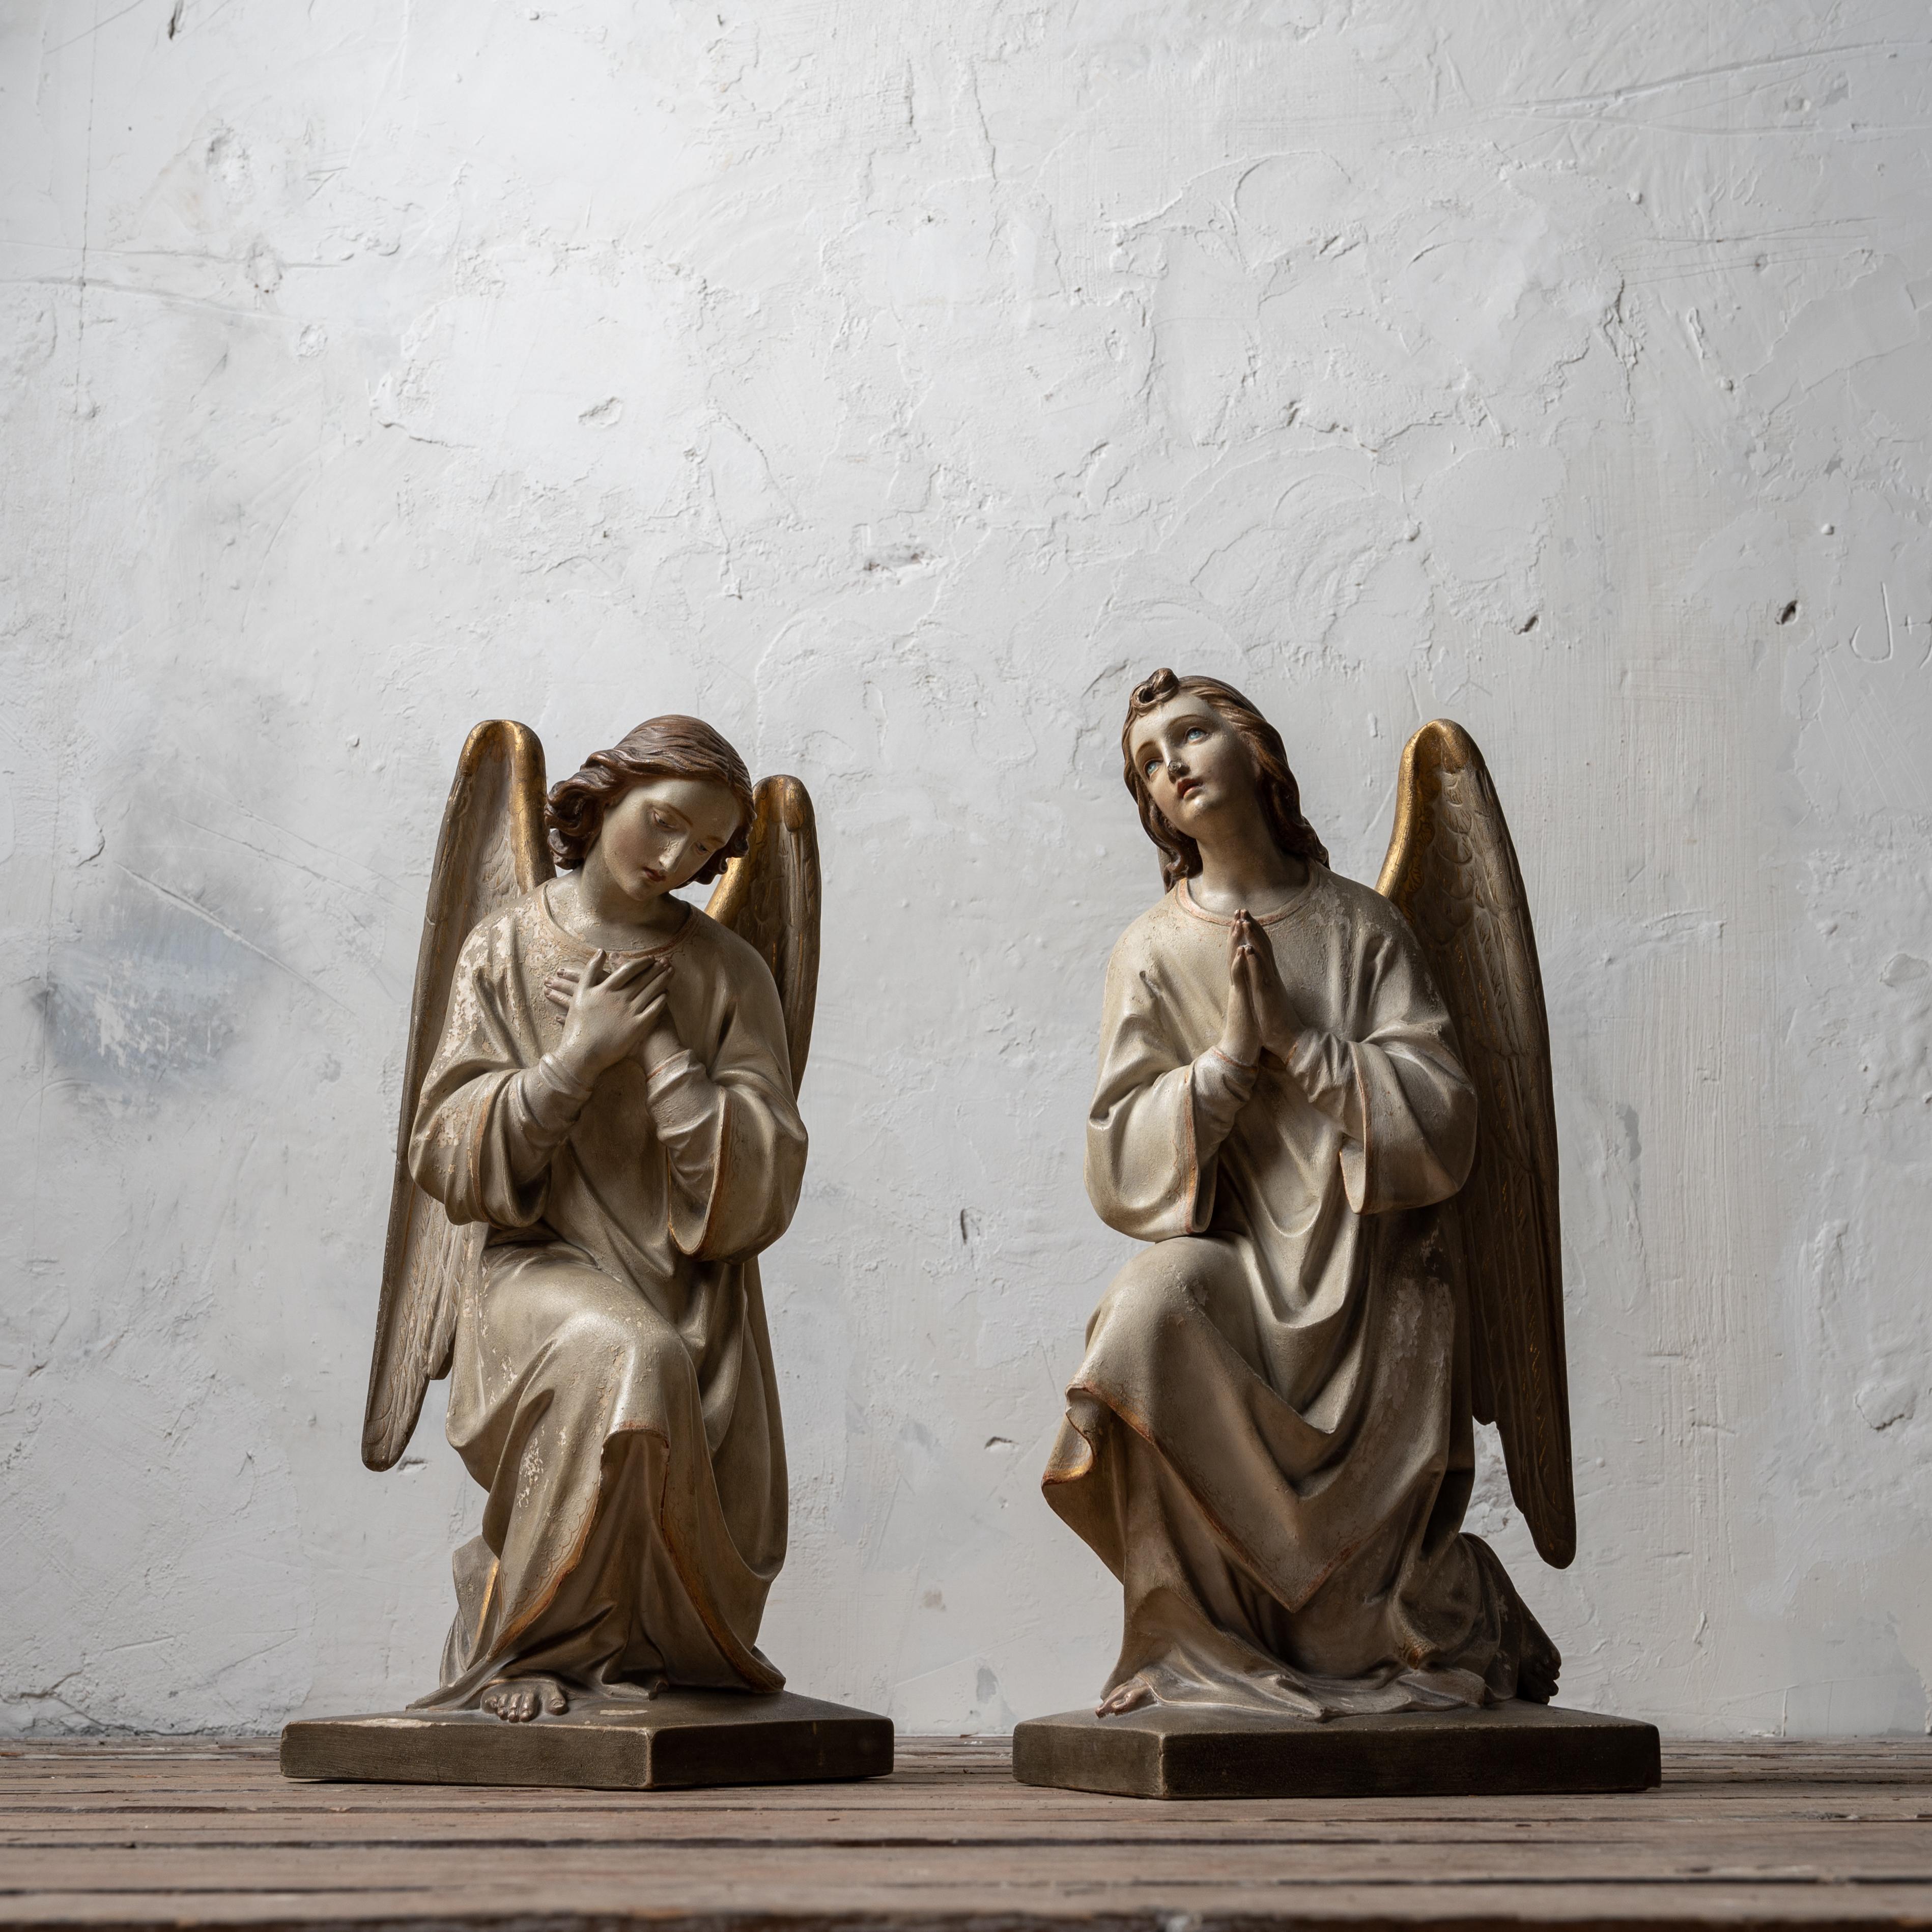 Paire d'anges d'autel en plâtre polychrome, France ou Belgique, fin du XIXe siècle.

11 pouces de large par 10 pouces de profondeur par 20 ¼ pouces de haut

